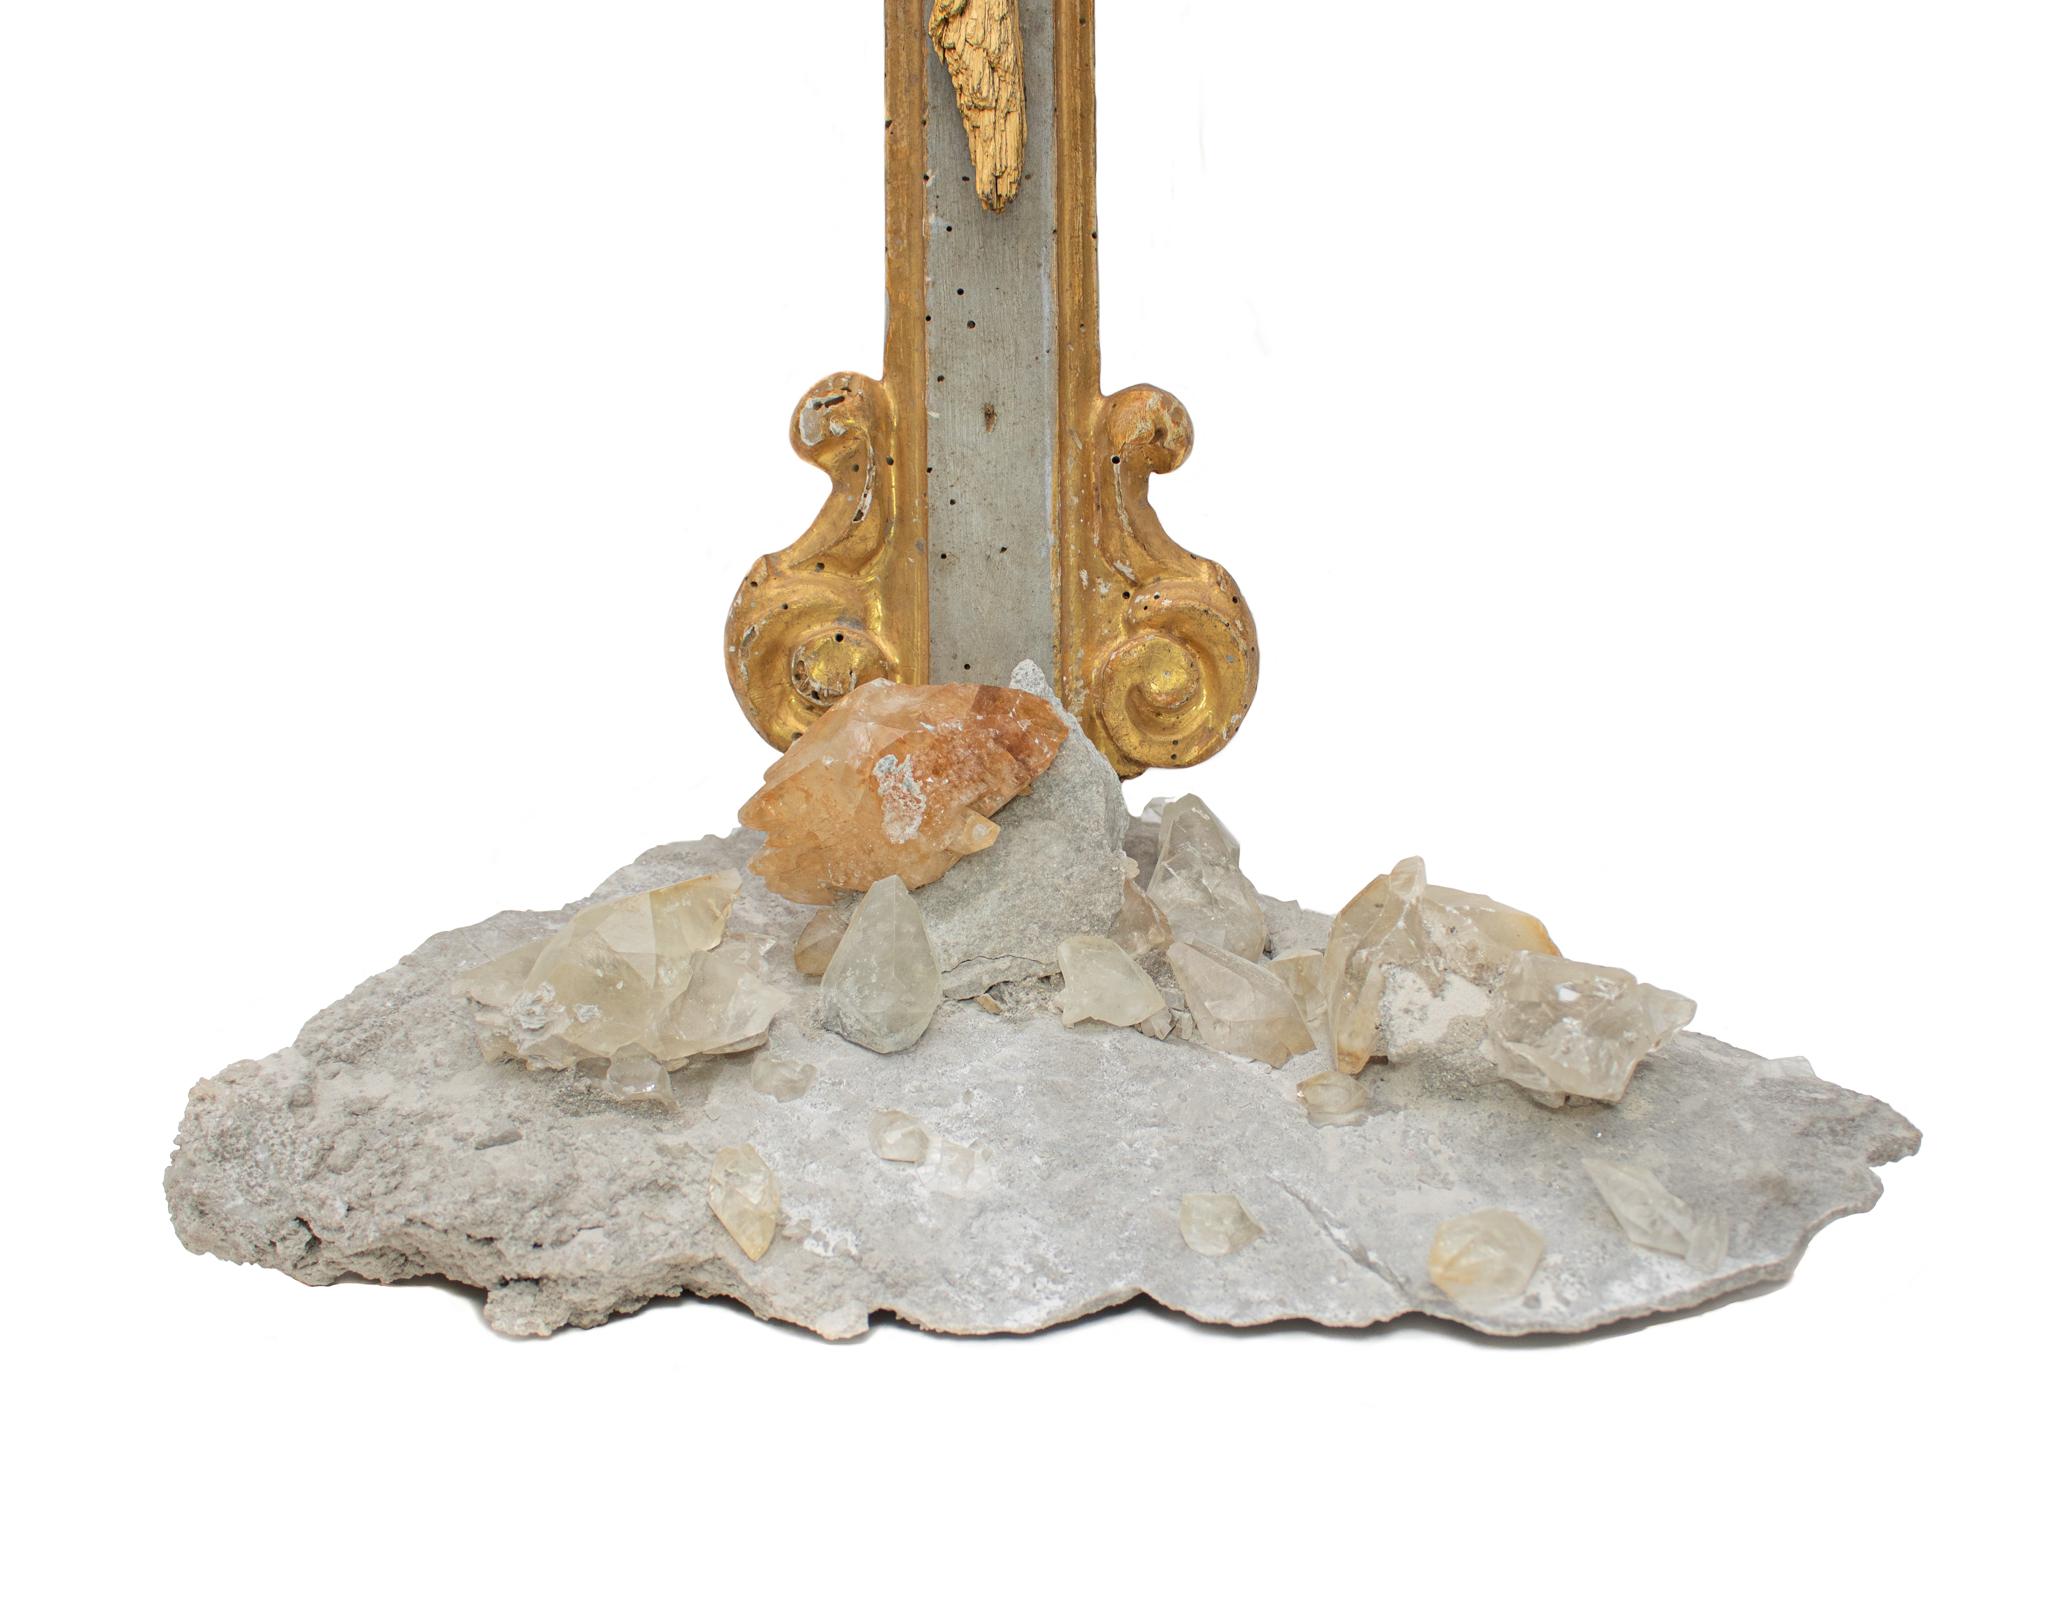 Italienisches Kruzifix aus dem 18. Jahrhundert mit vergoldetem Kyanit, Kalzitkristallen in der Matrix und Barockperlen. Das Kruzifix stammt ursprünglich aus einer Kirche in Ligurien. Sie ist handgeschnitzt und mit grauen Pigmenten bemalt. Der